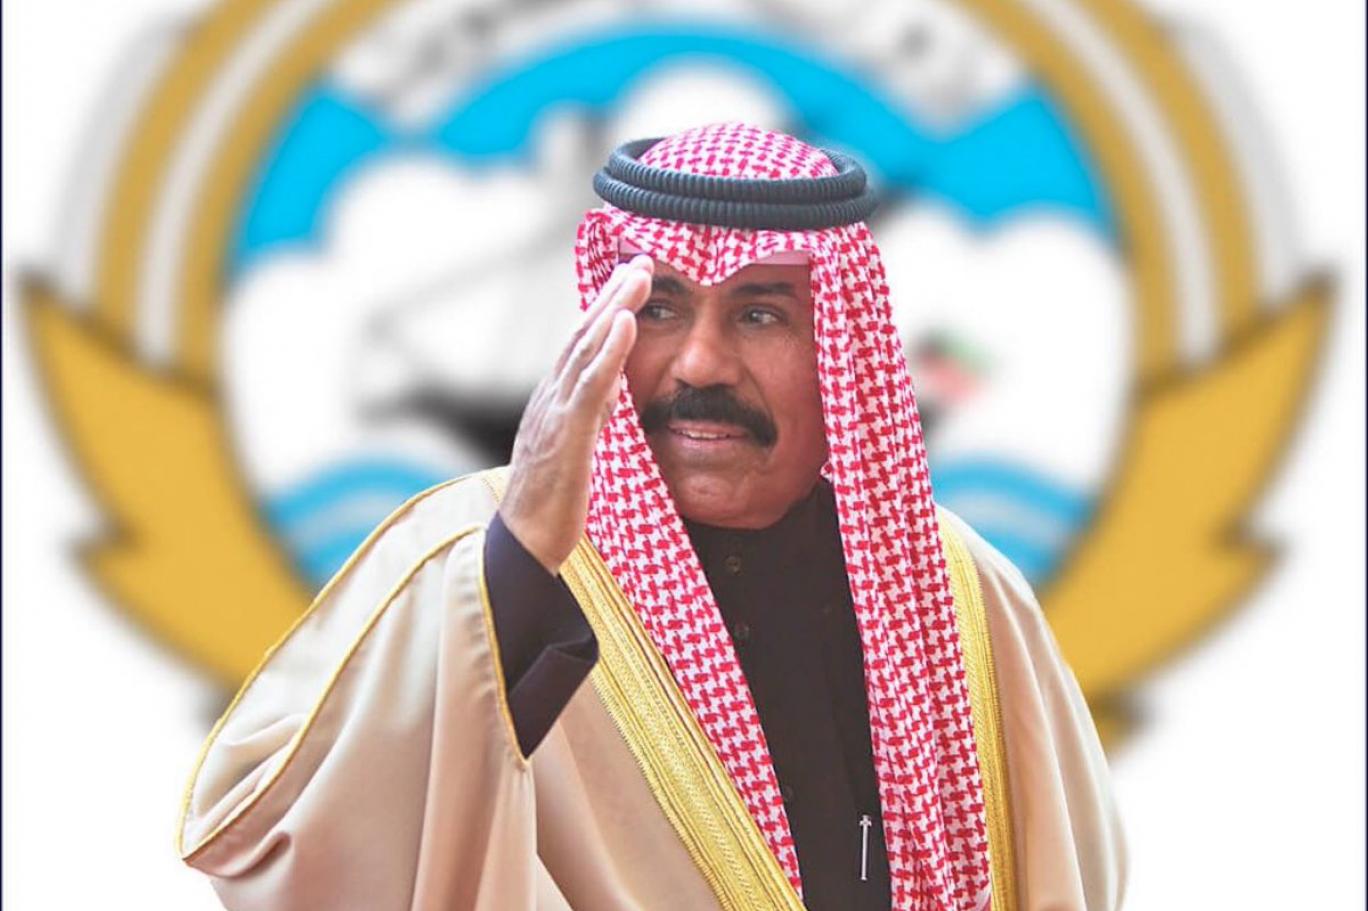  مجلس الوزراء الكويتي يعلن الشيخ نواف الأحمد الصباح أميراً للبلاد 